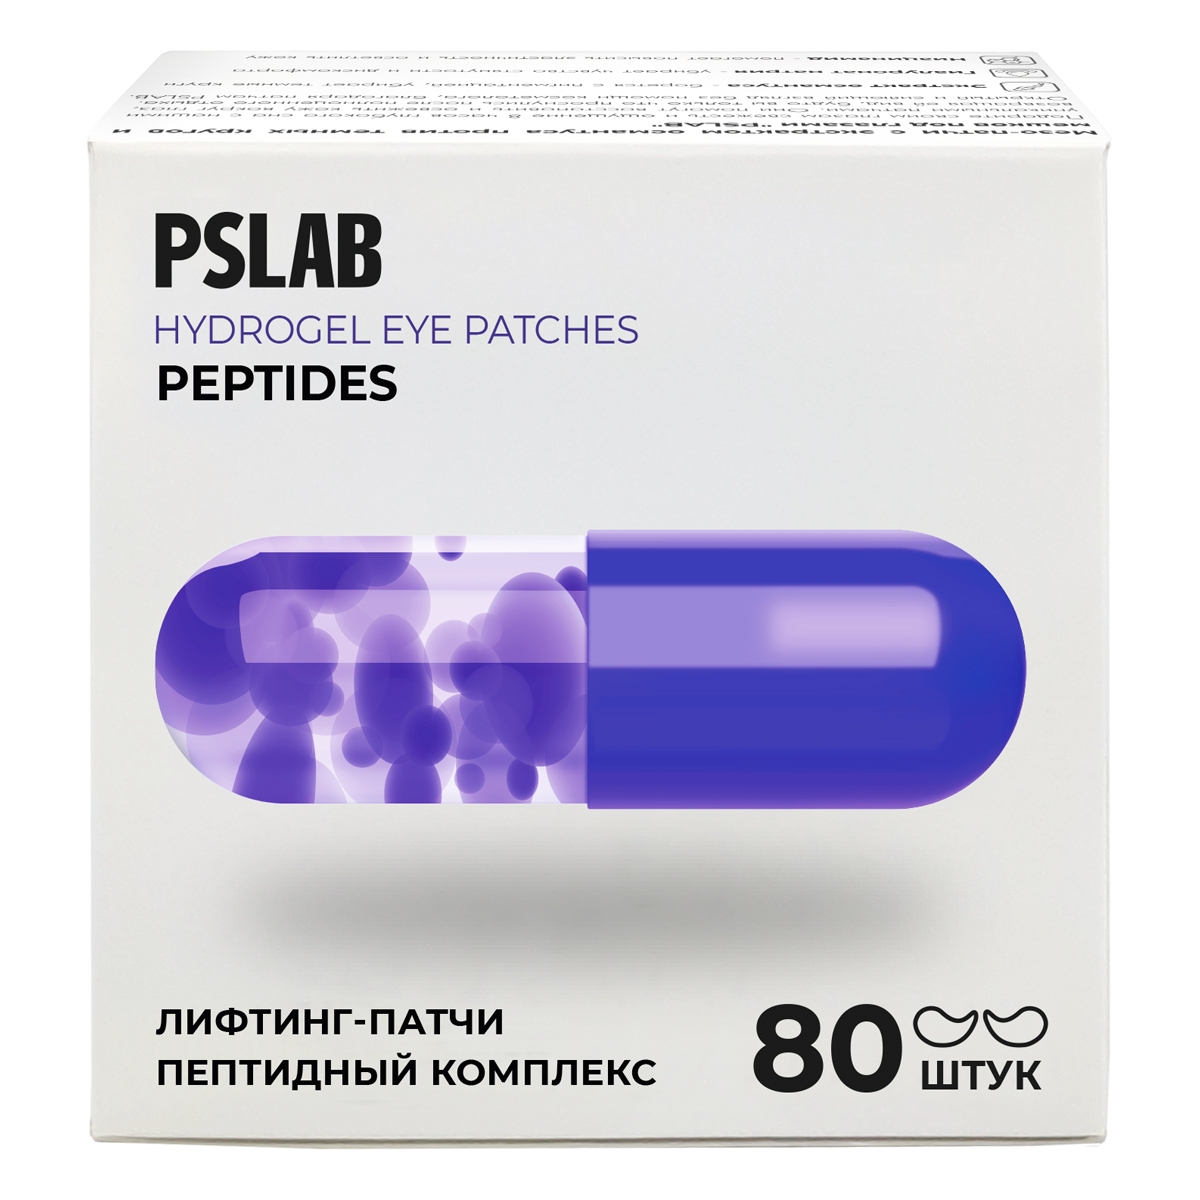 Лифтинг-патчи PSLAB с пептидами против возрастных изменений 358гр лифтинг патчи pslab с пептидами против возрастных изменений 358гр